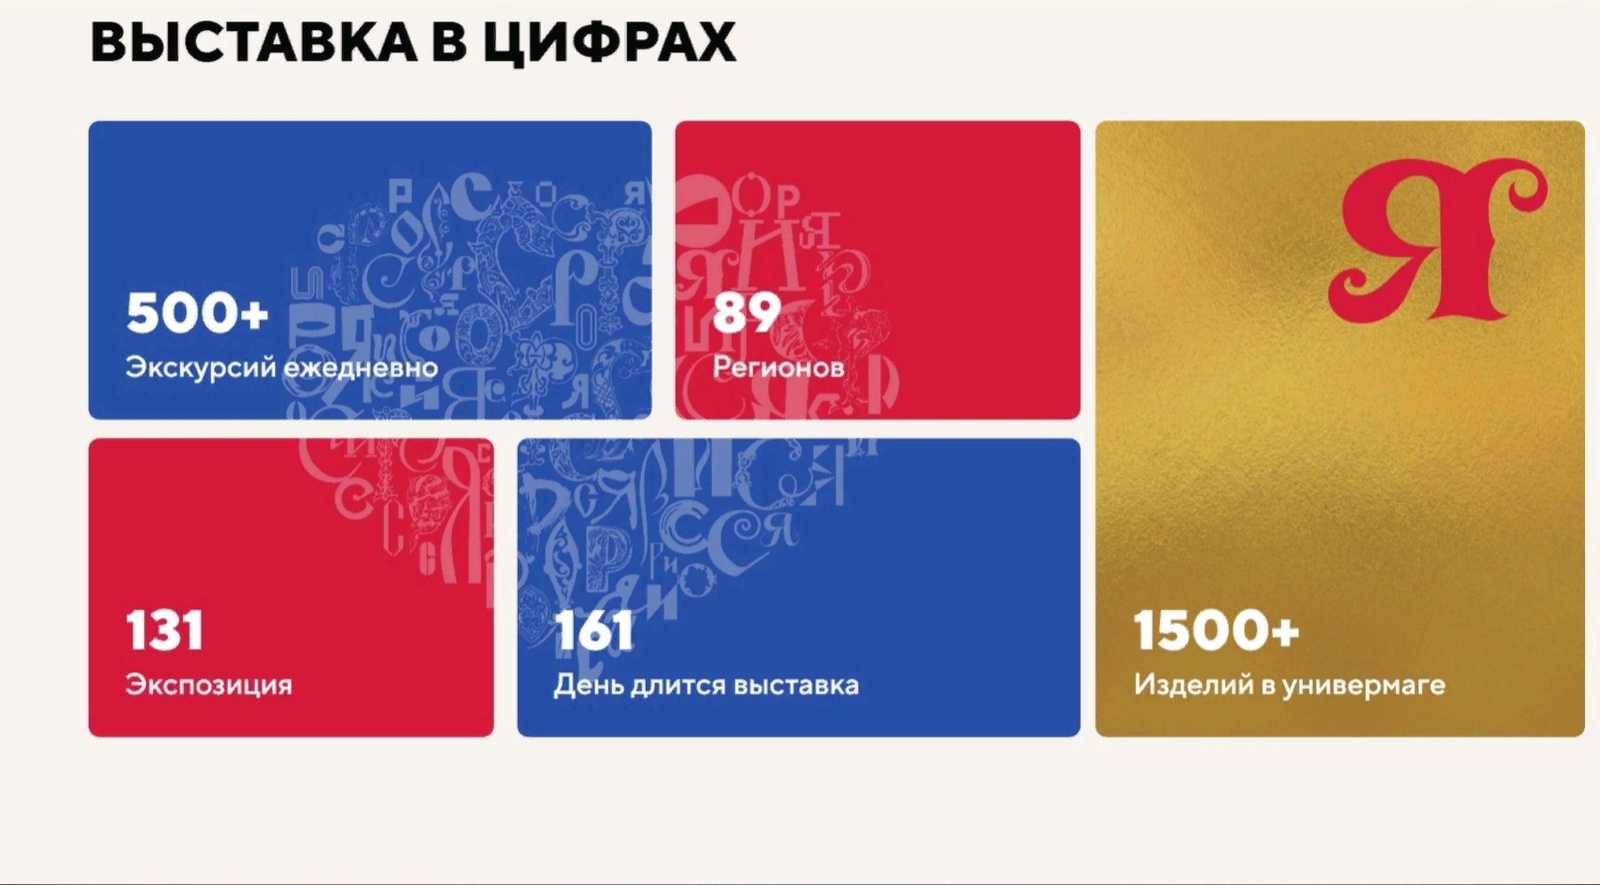 В Москве на Международной выставке "Россия" примут участие 2500 учеников и студентов из Башкортостана